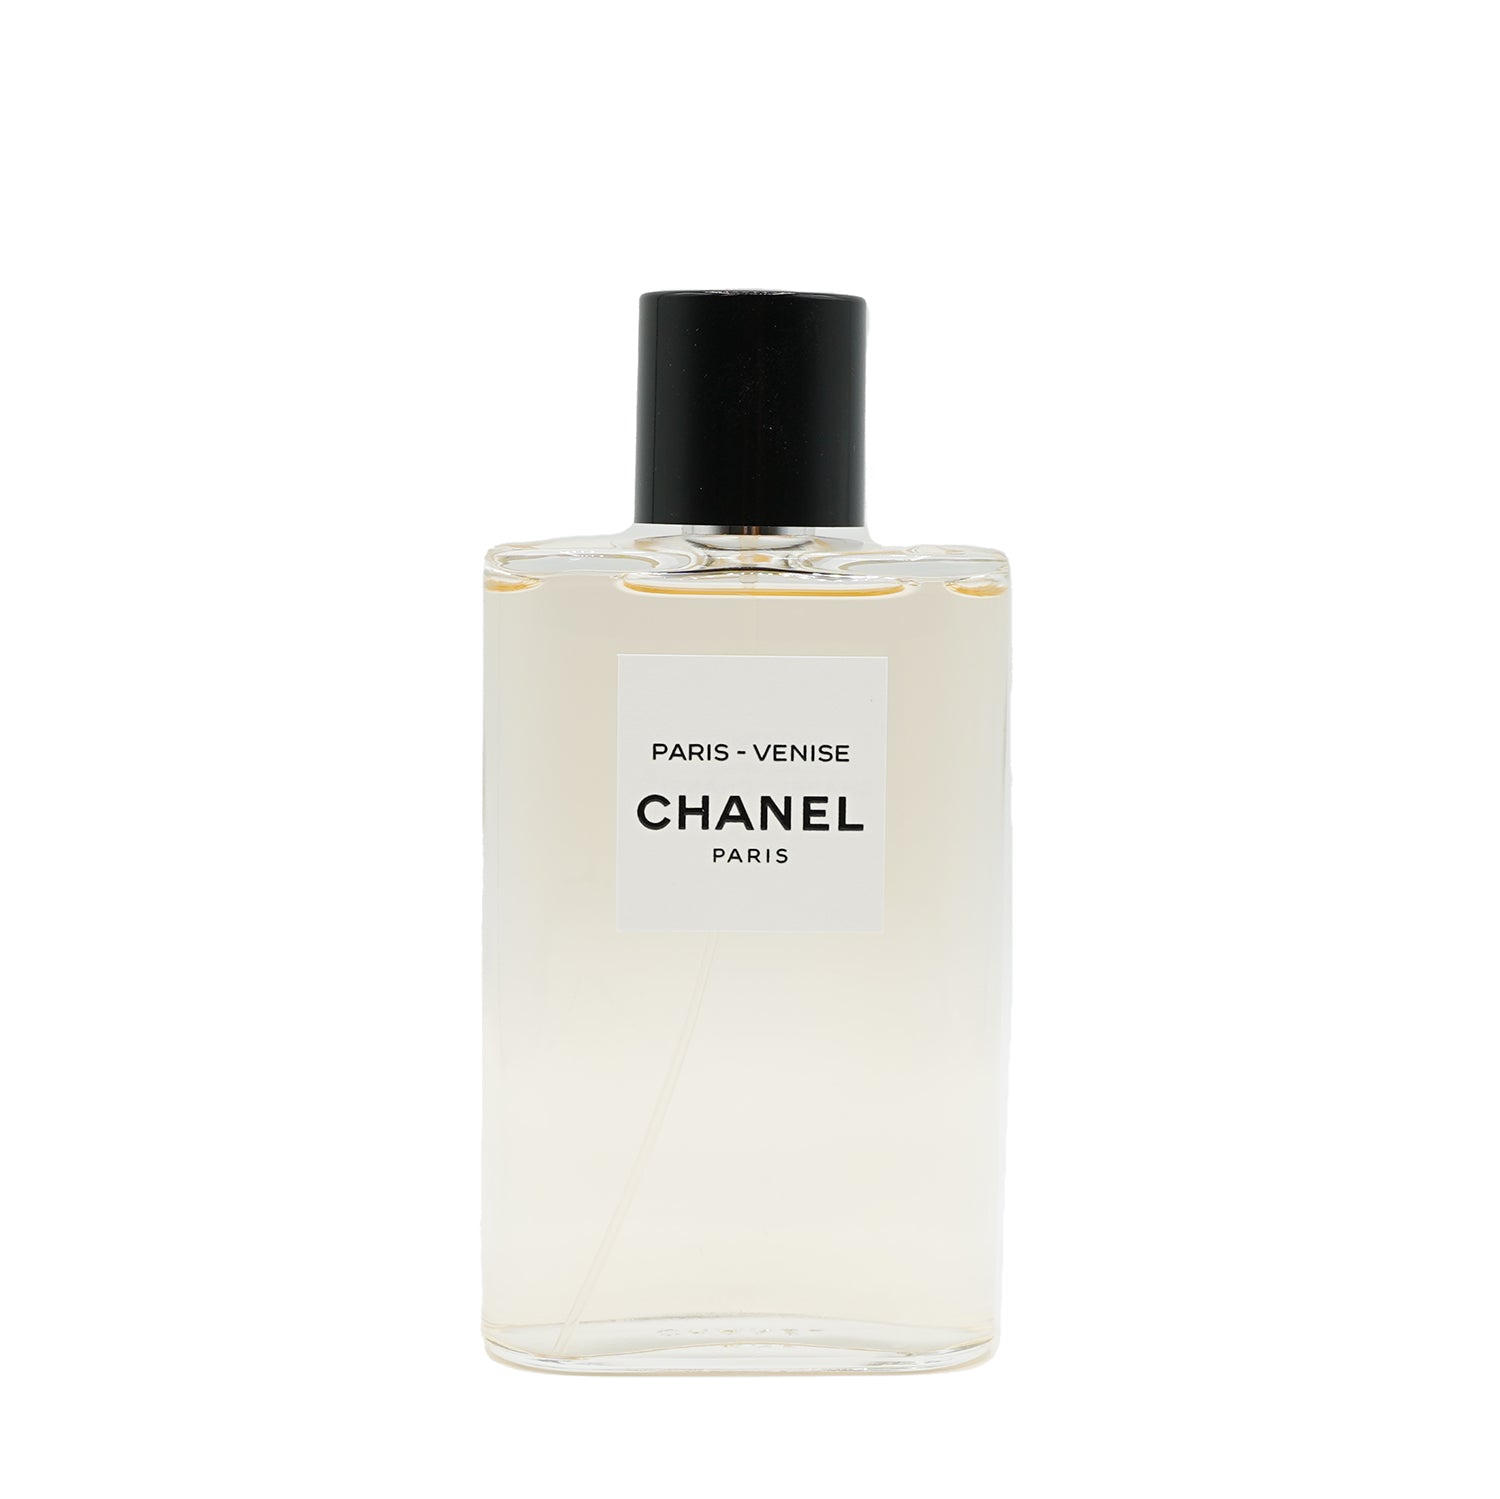 Chanel | Paris - Venise Abfüllung